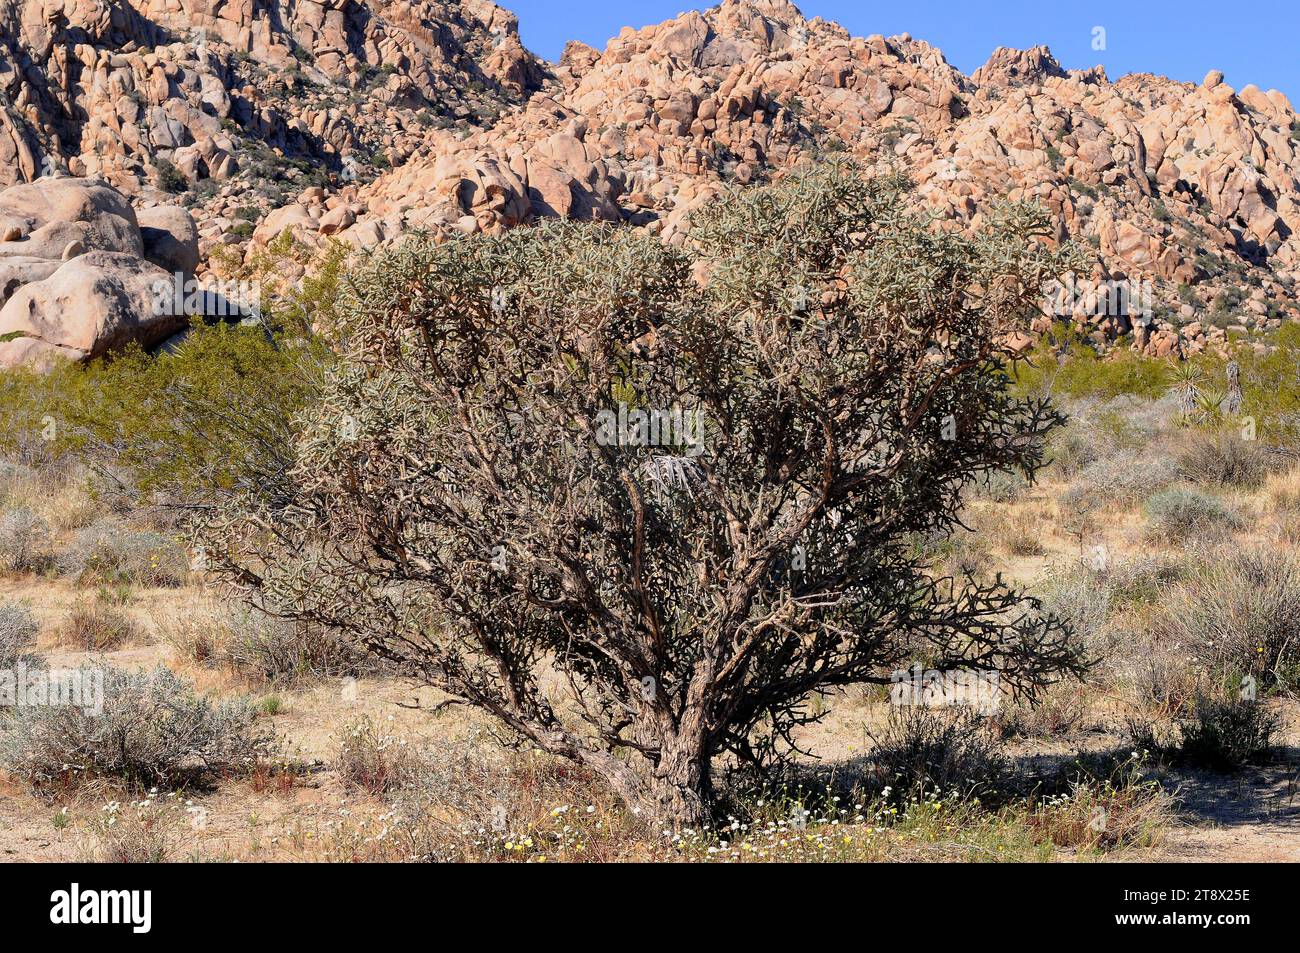 Diamant cholla (Cylindropuntia ramosissima oder Opuntia ramosissima) ist ein cholla-Kakteen, der in der Mojave-Wüste (USA) und im Nordwesten Mexikos beheimatet ist. Dieses Foto Stockfoto